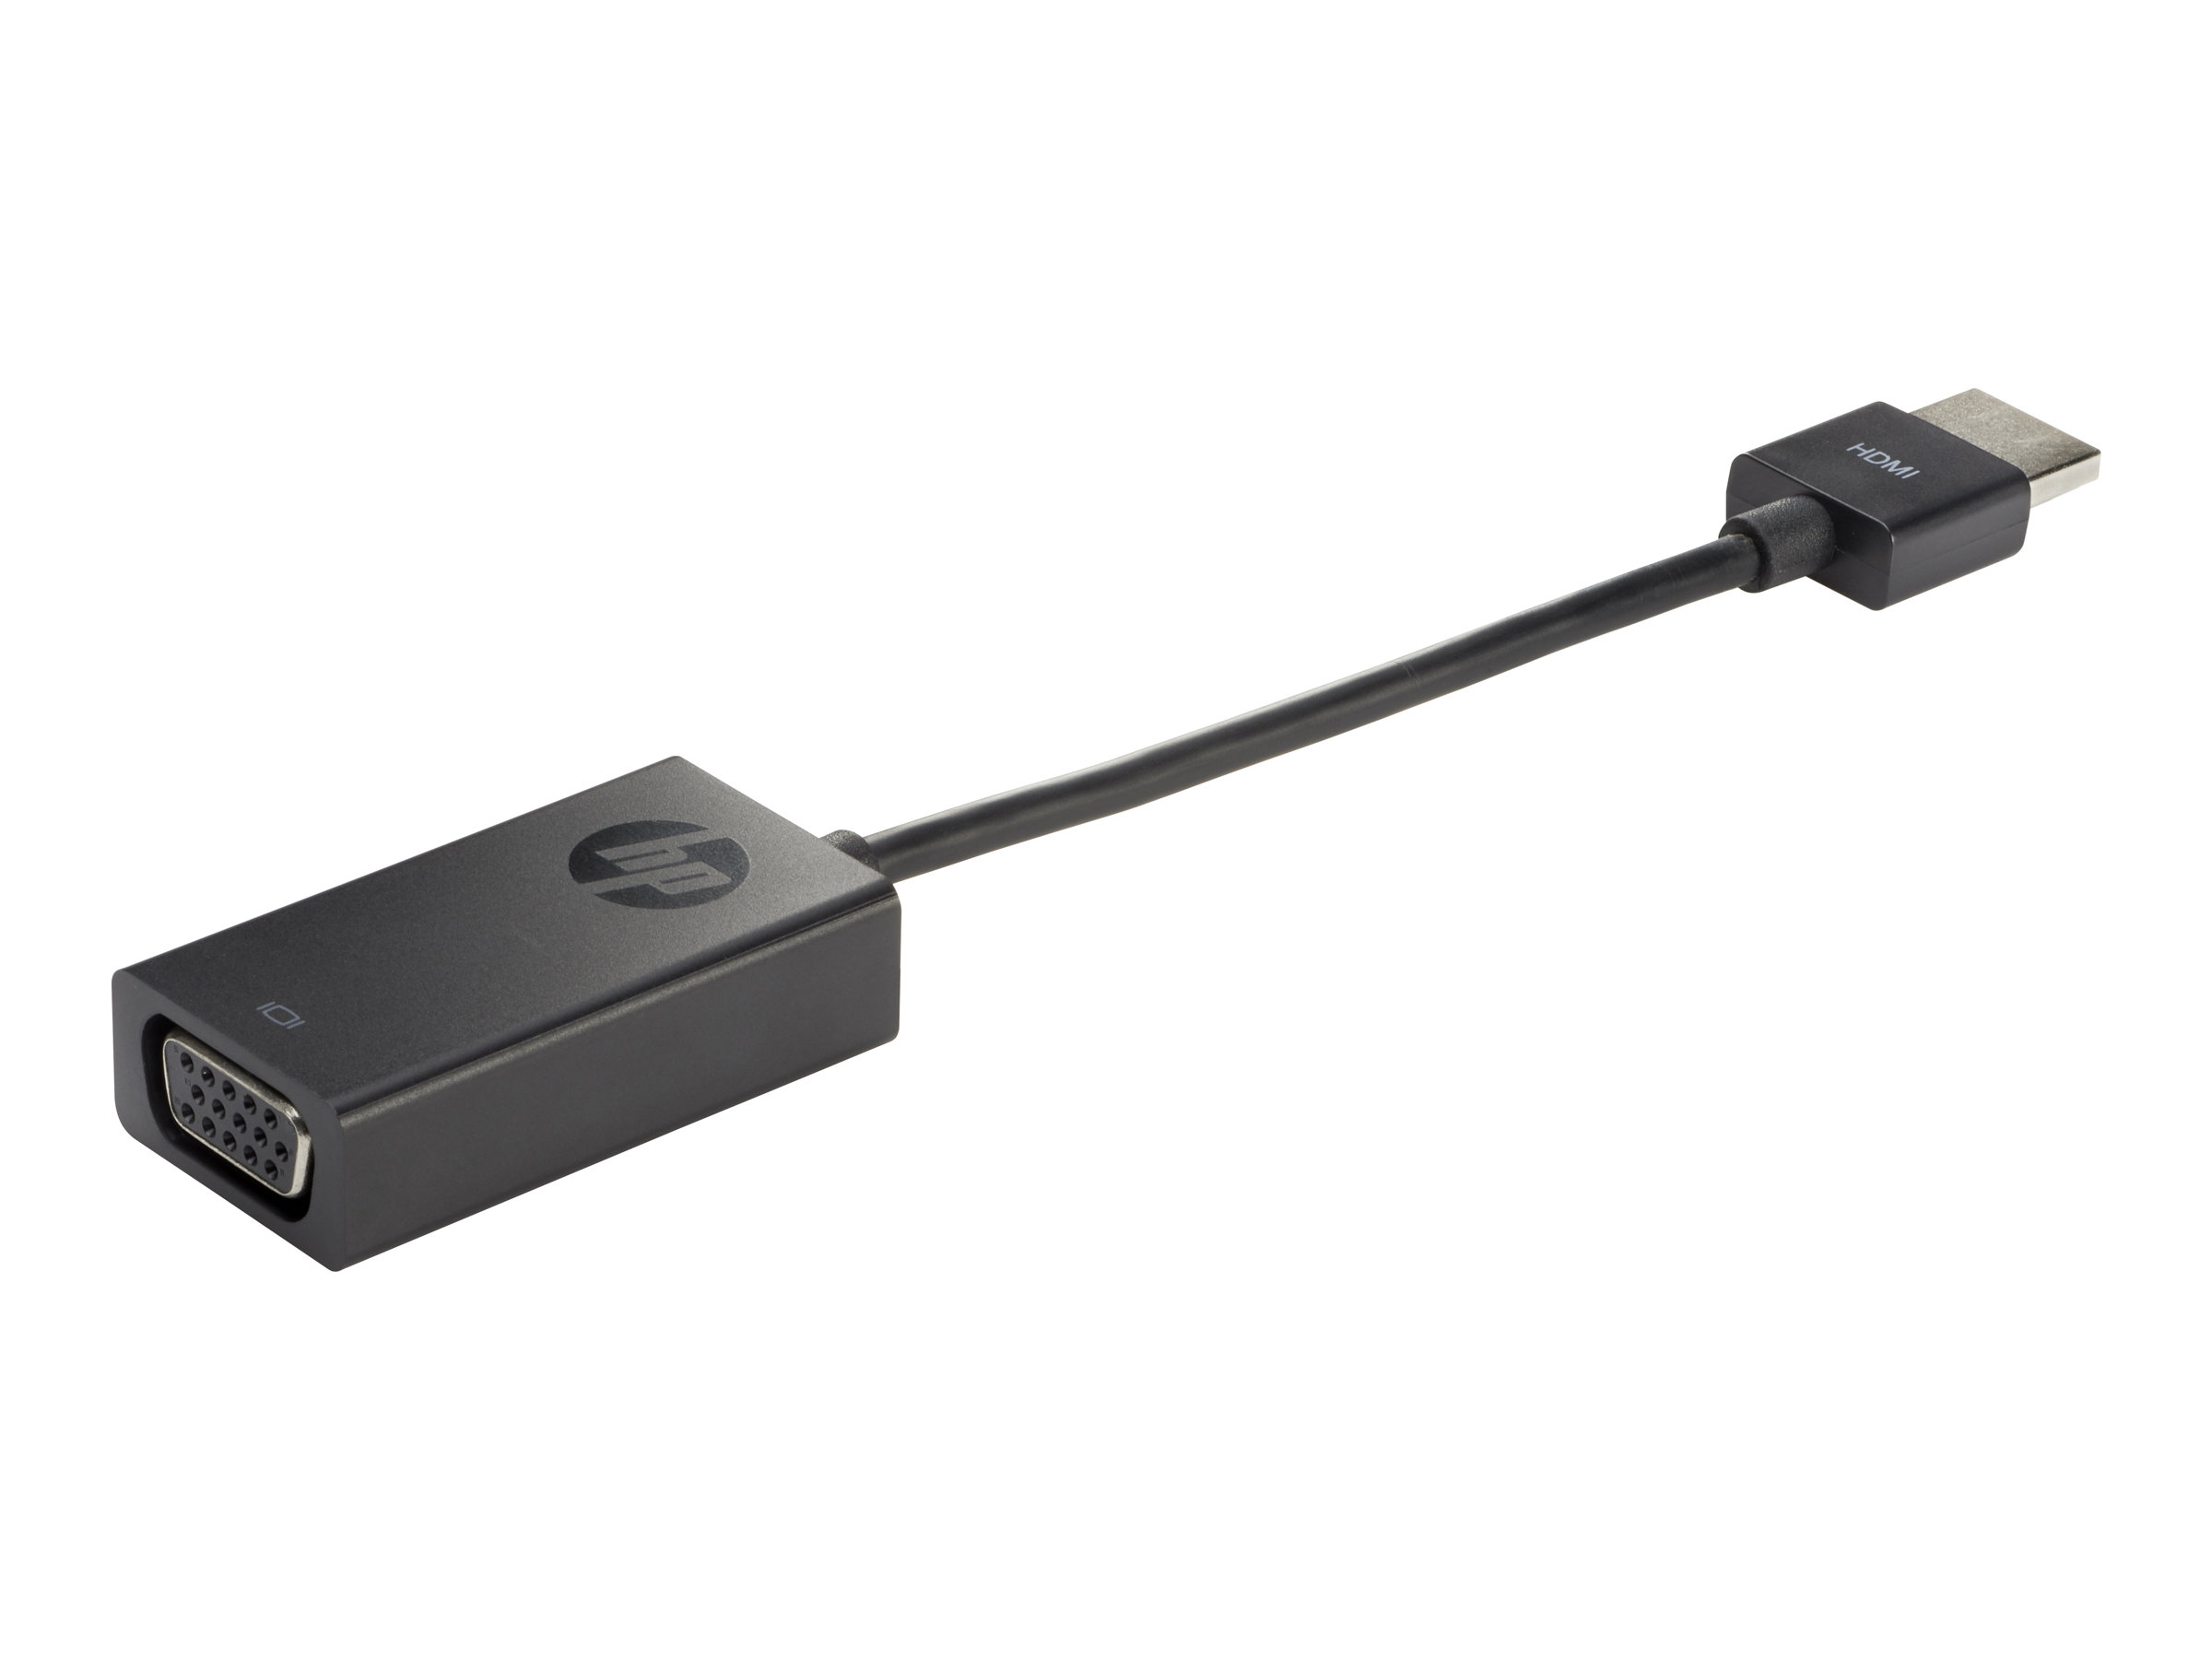 HP HDMI to VGA Display Adapter - Videoadapter - HD-15 (VGA)